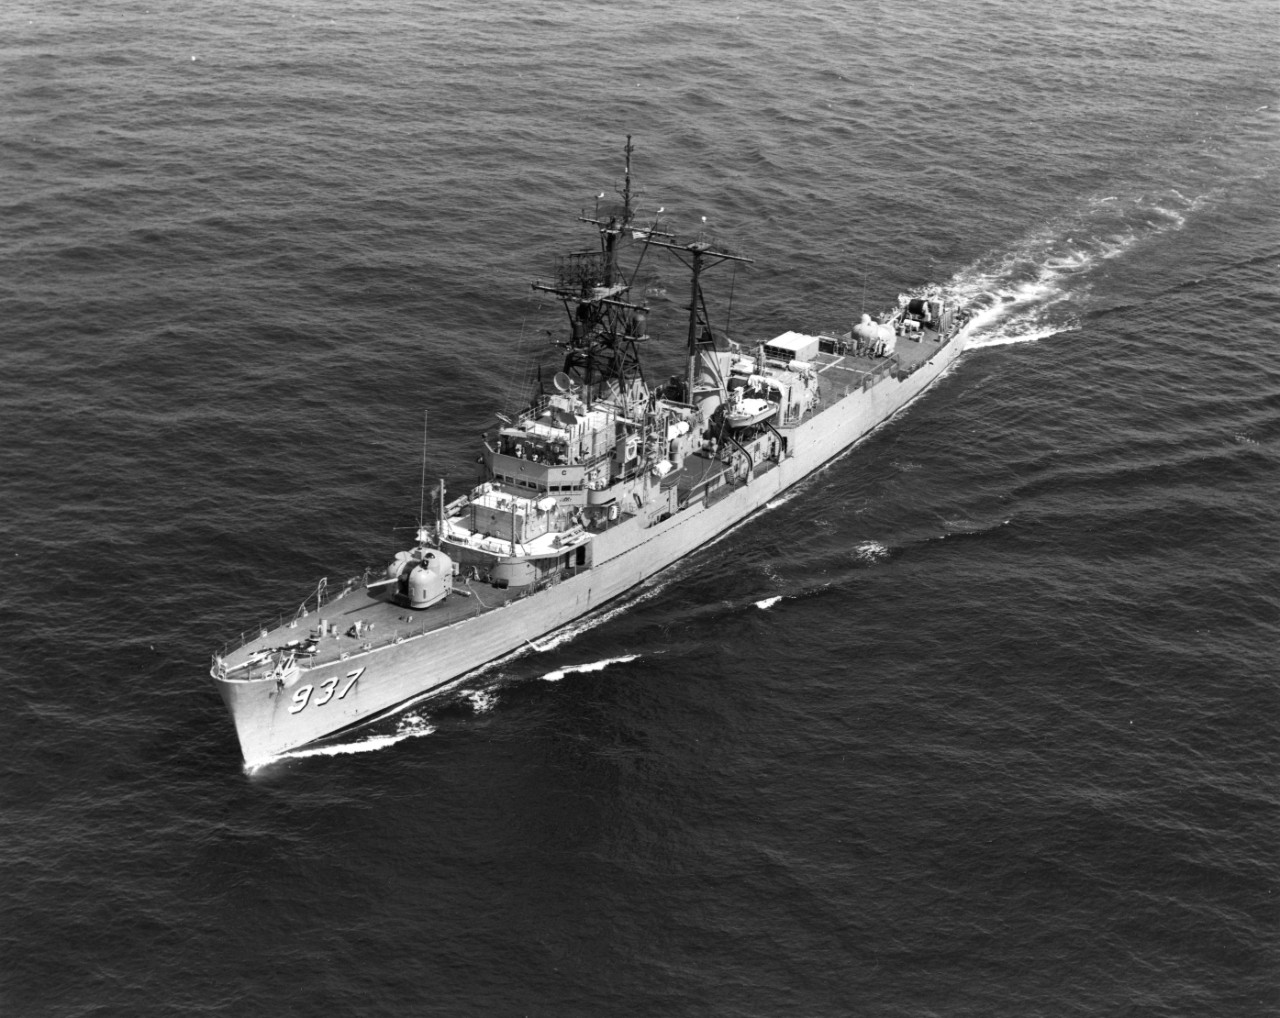 USS George F. Davis (DD-937) underway in the Indian Ocean